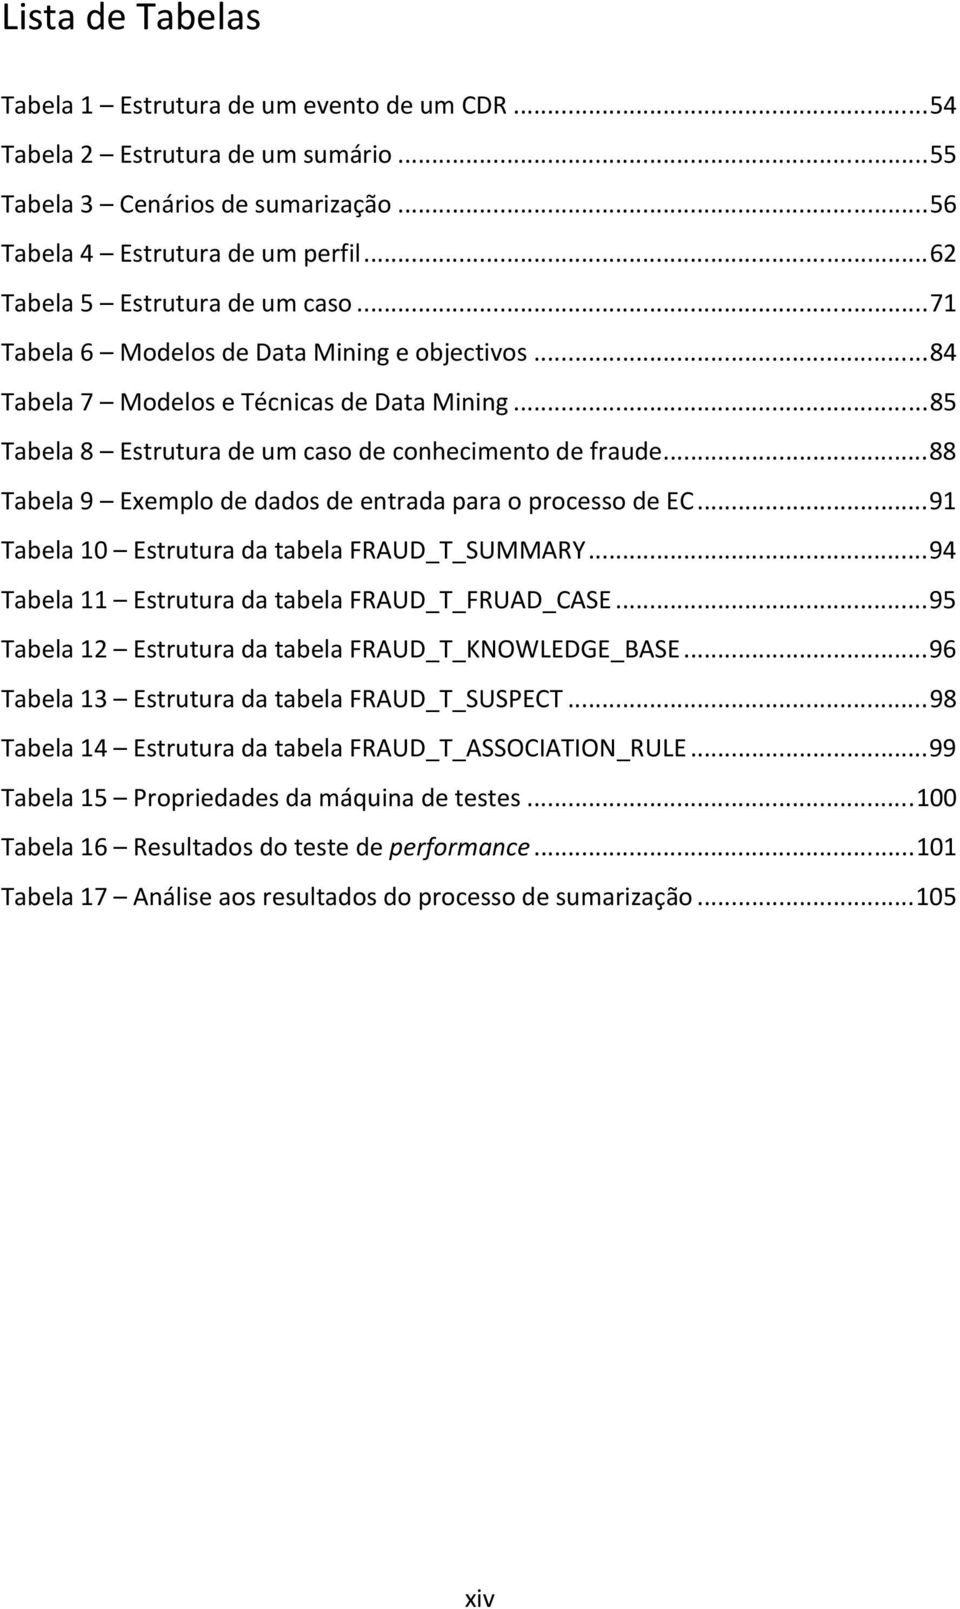 .. 88 Tabela 9 Exemplo de dados de entrada para o processo de EC... 91 Tabela 10 Estrutura da tabela FRAUD_T_SUMMARY... 94 Tabela 11 Estrutura da tabela FRAUD_T_FRUAD_CASE.